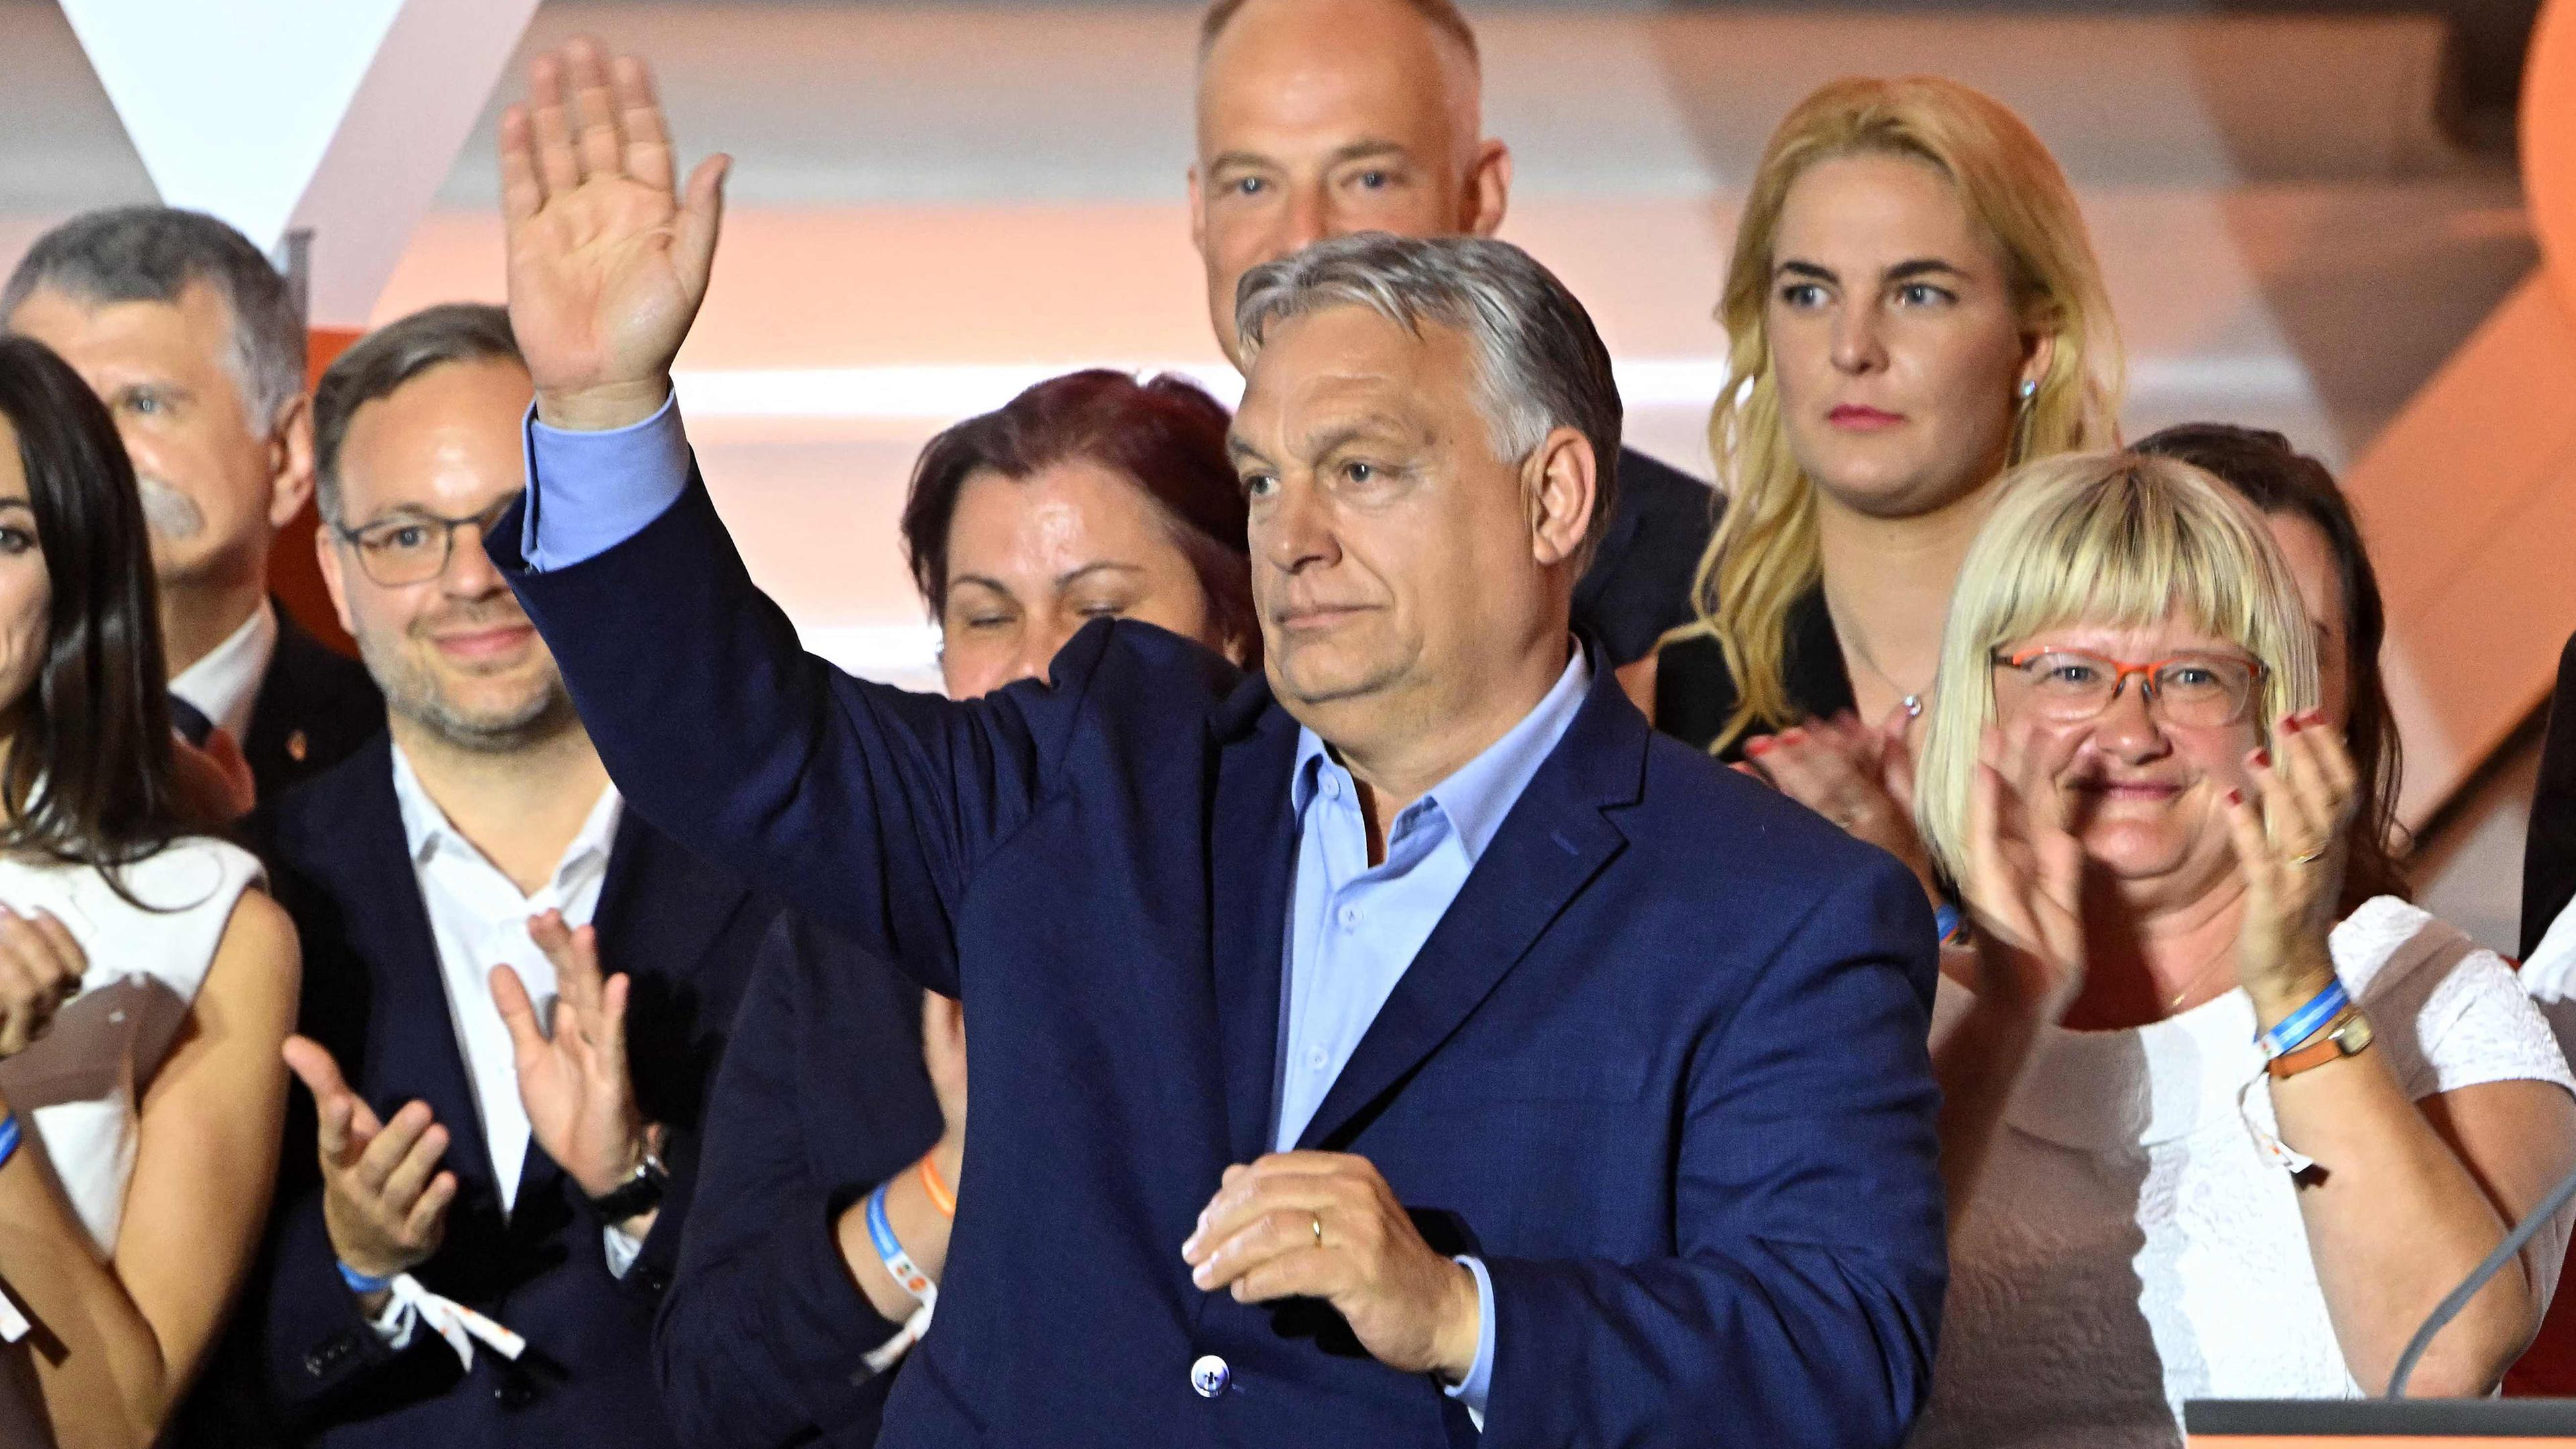 Viktor Orbán nach der Europawahl mit Mitgliedern der Fidesz-Partei.